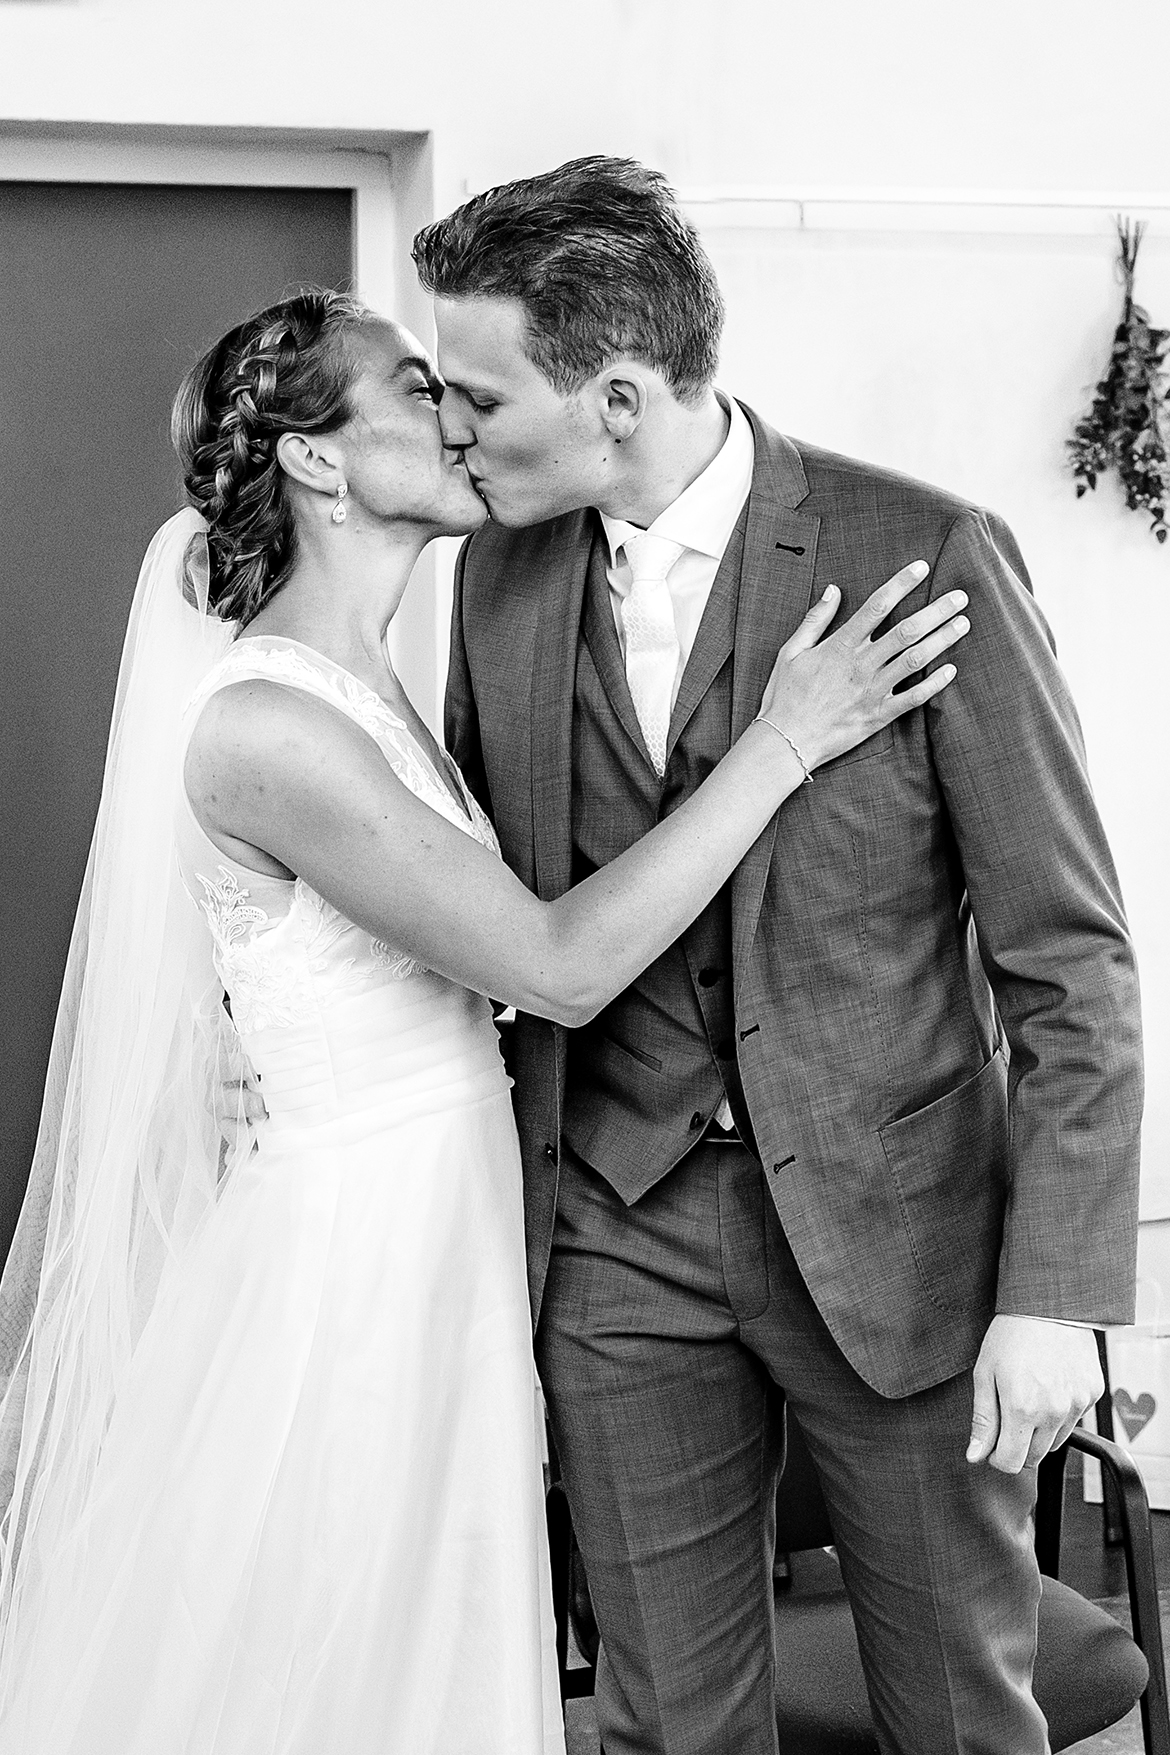 Bruidsfotografie-bruidsfotograaf-SleeuwijksKerkje-dordrecht-kinderdijk-bruidsreportage-trouwfotografie-bruid-bruidegom-coronabruiloft-corona-fotografie-trouwfotograaf